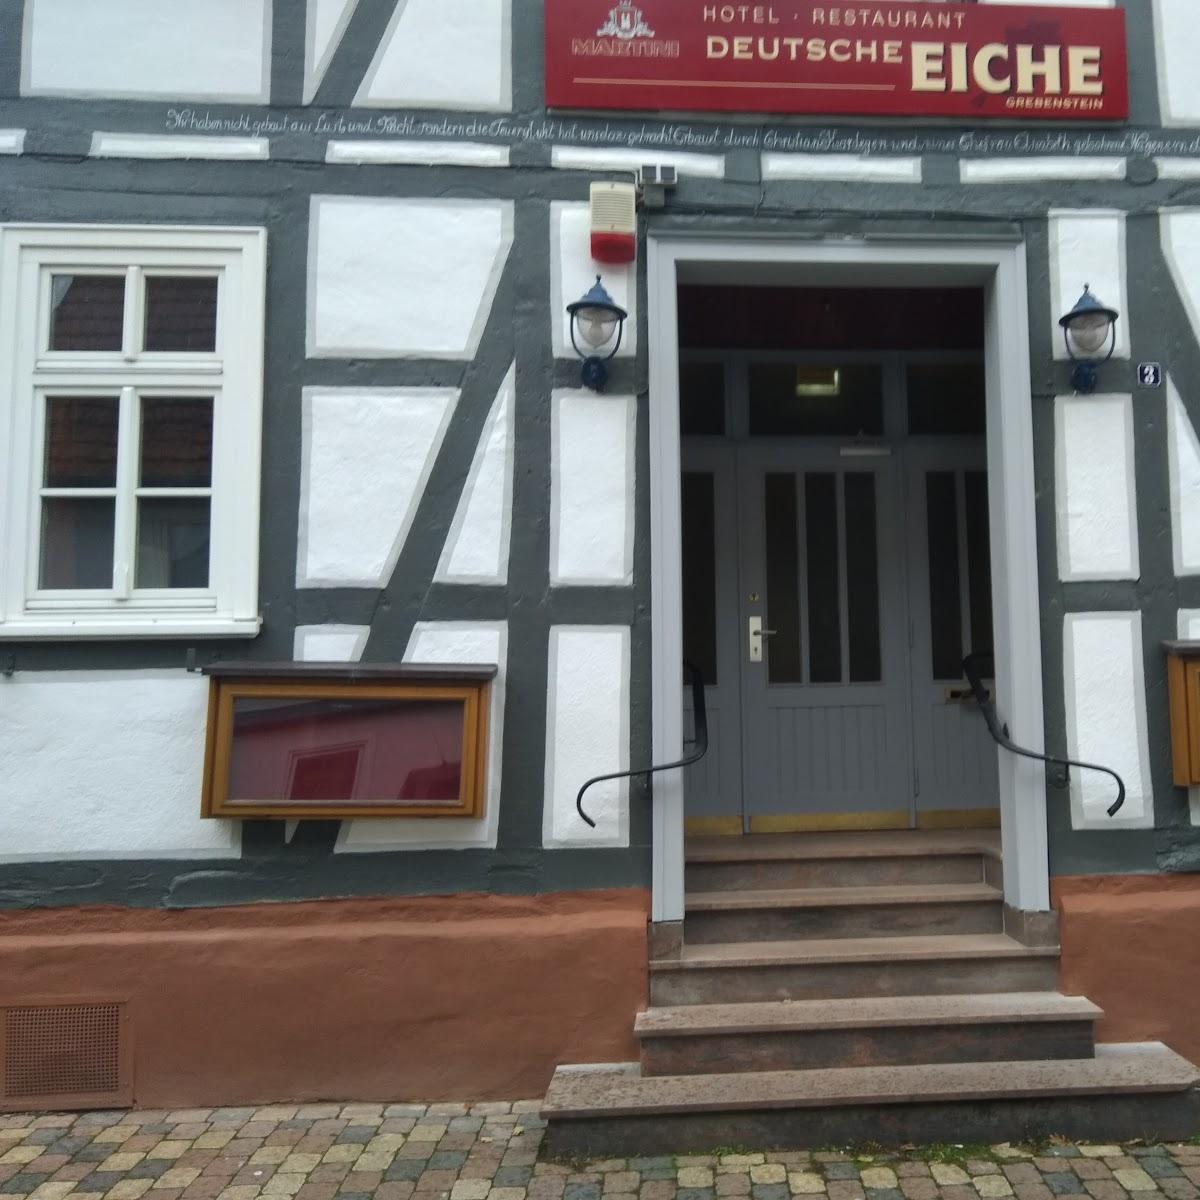 Restaurant "Deutsche Eiche" in Grebenstein